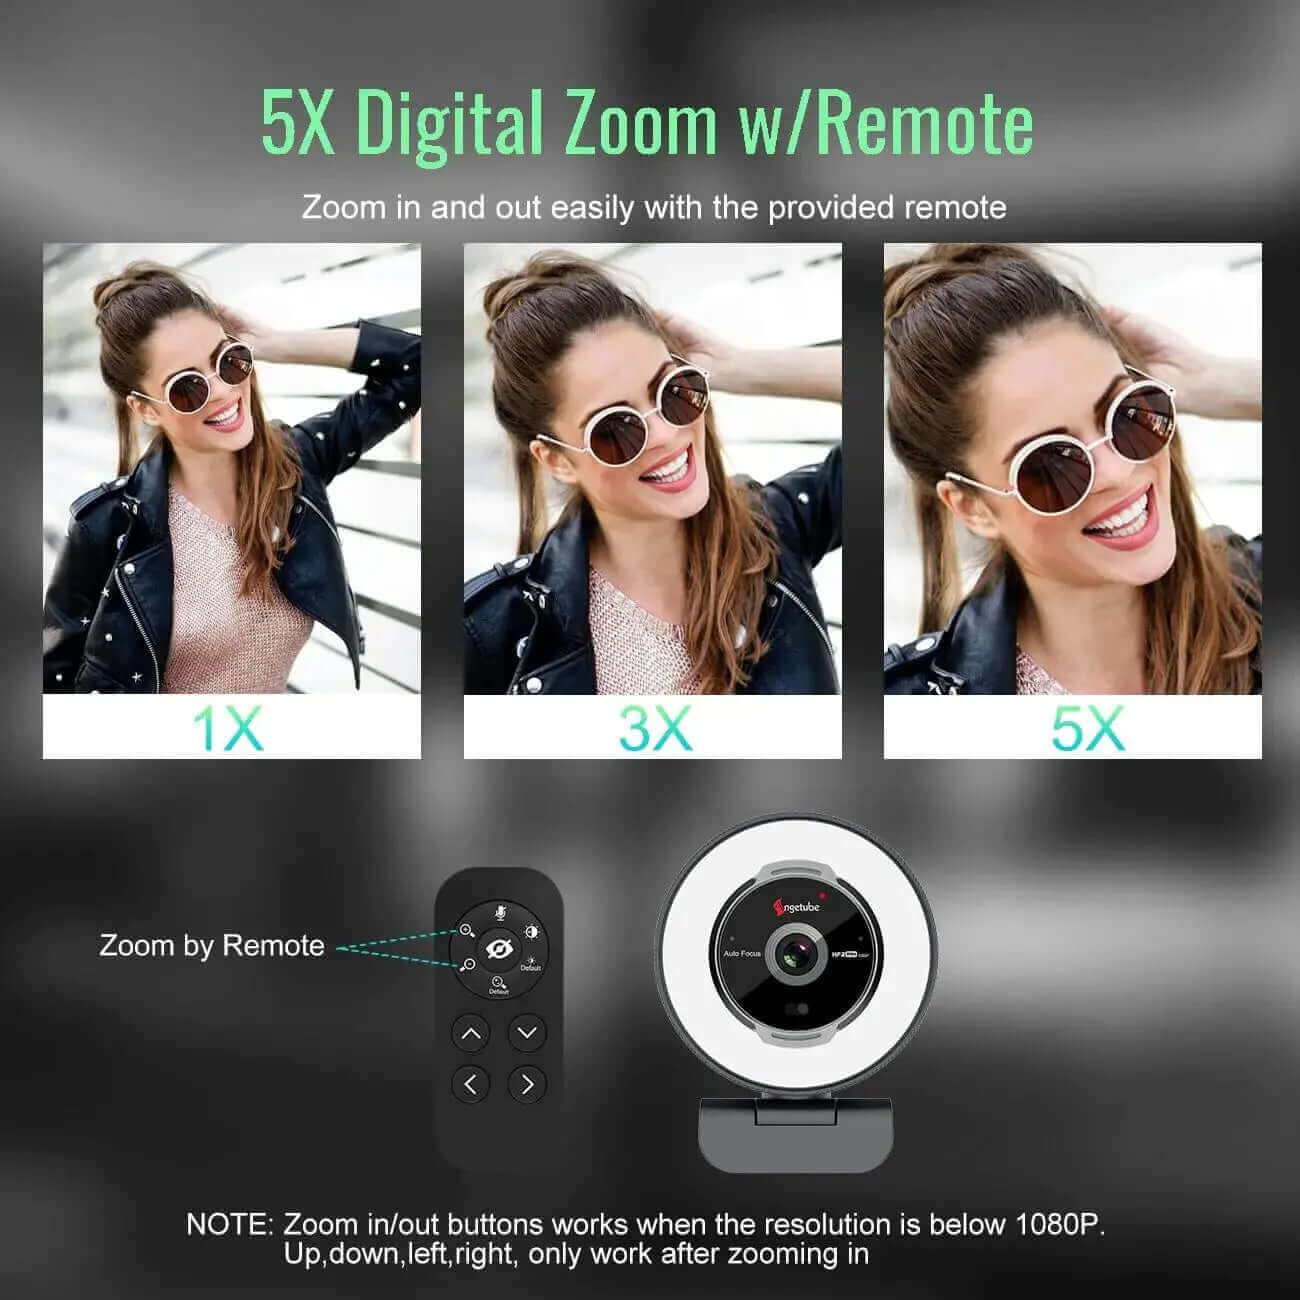 5X Digital Zoom w/Remote